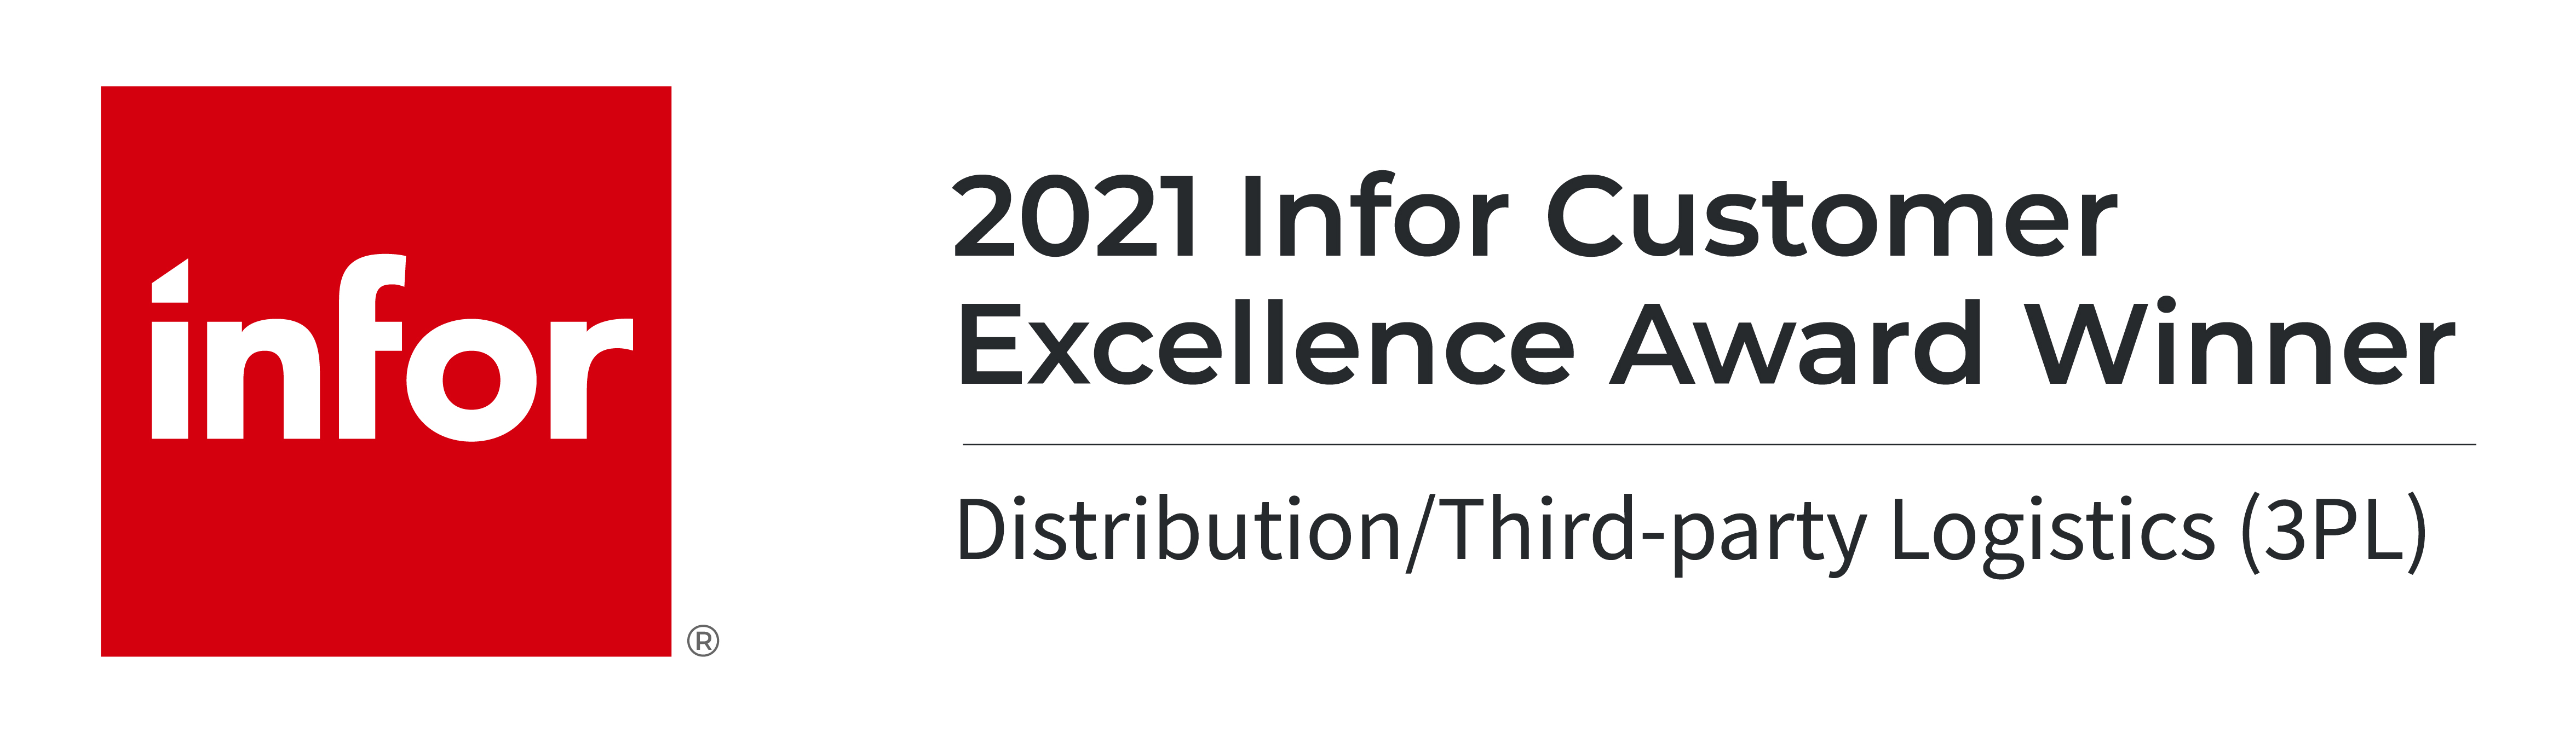 2021 infor customer excellence award winner